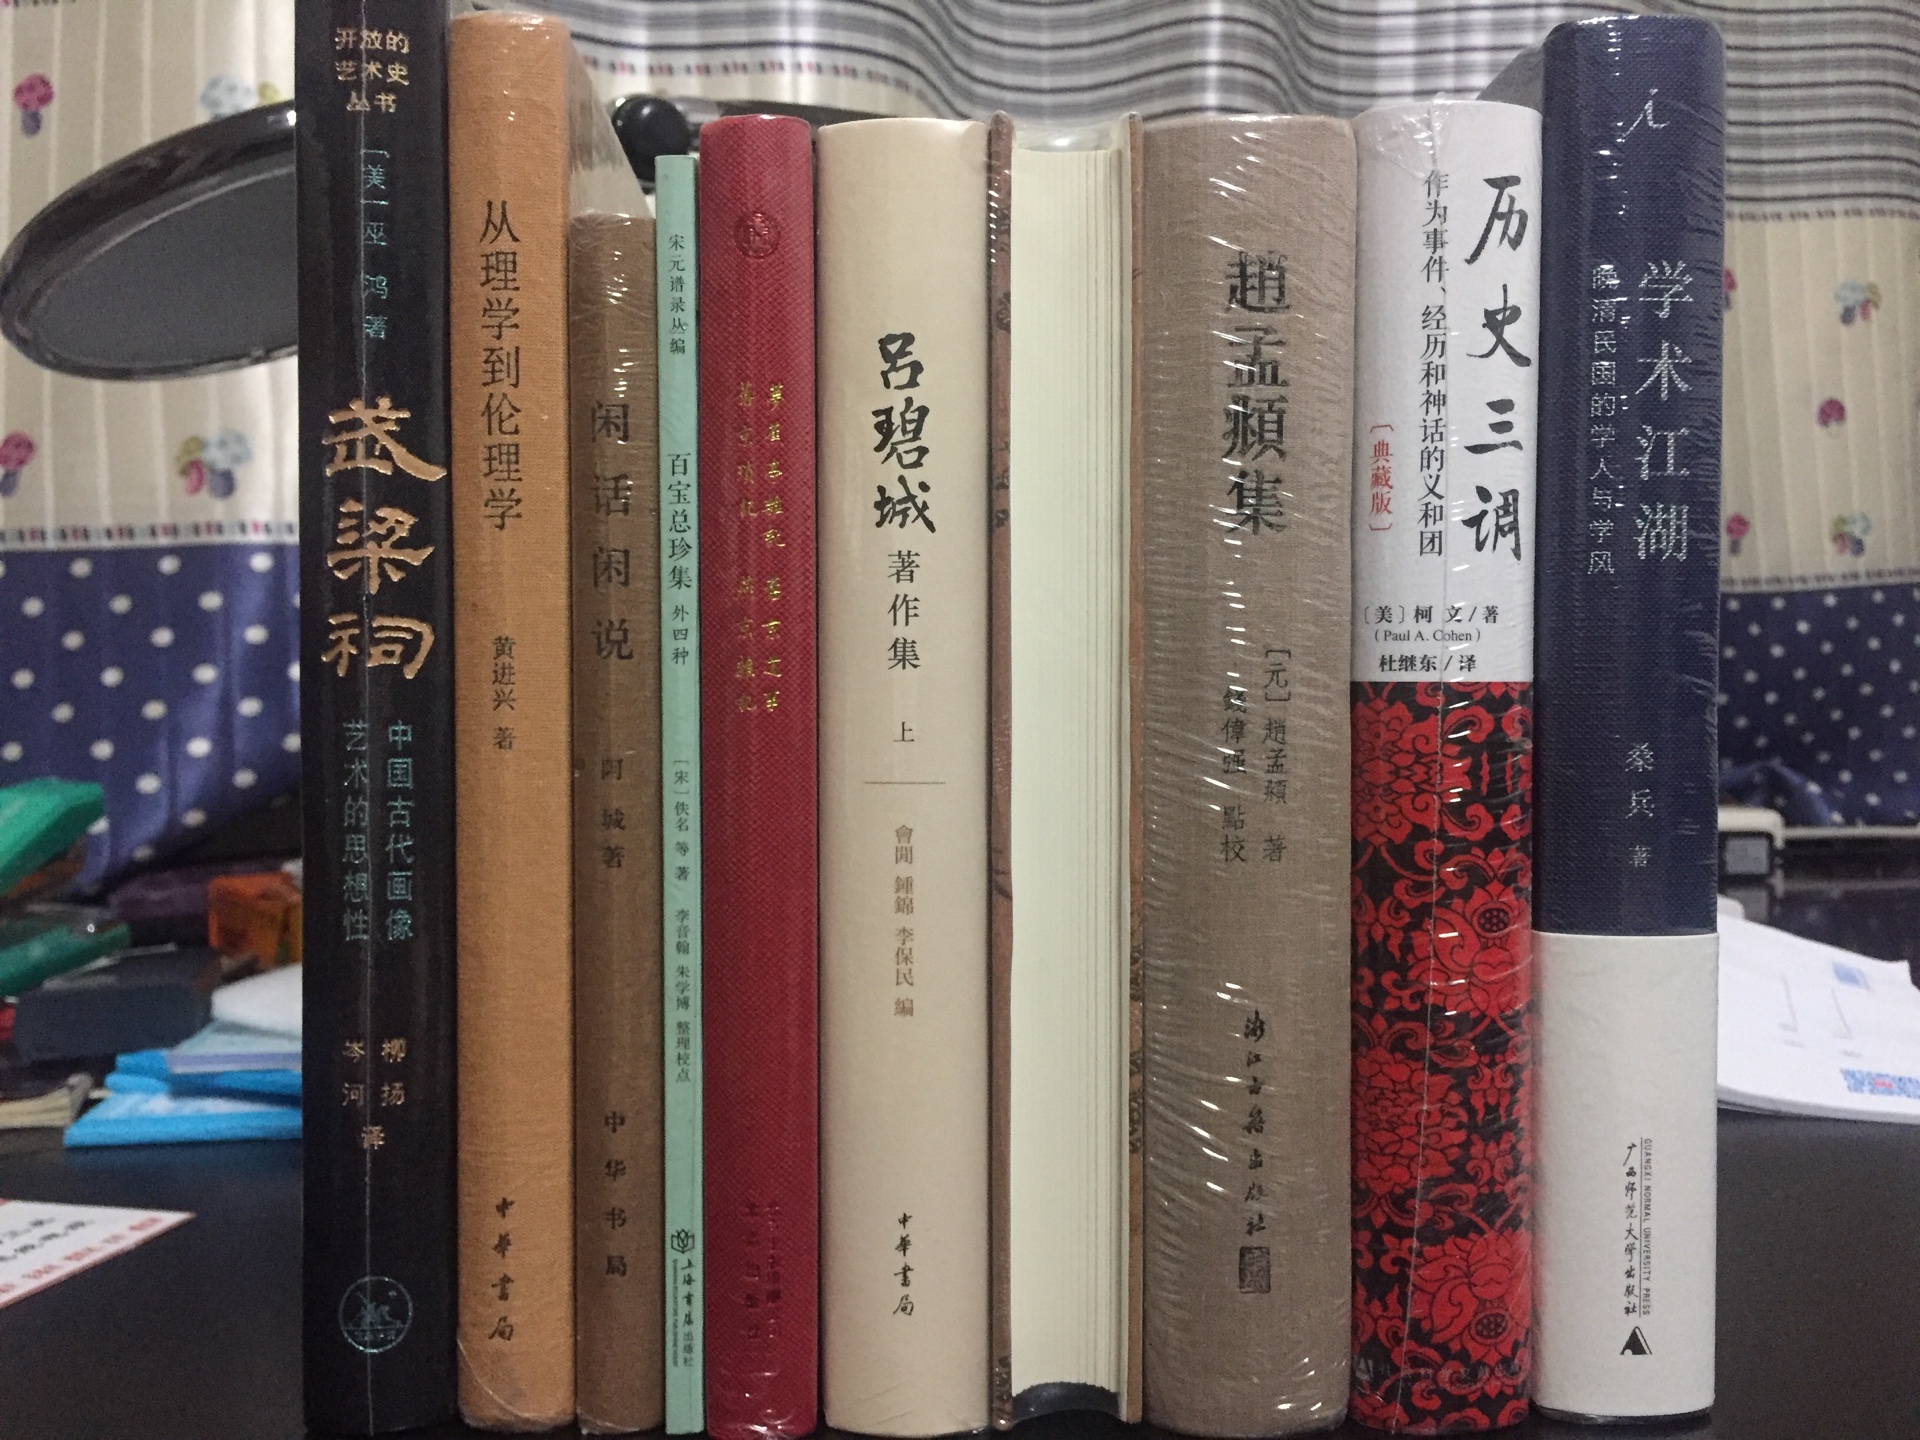 《梦蕉亭杂记》是陈夔龙1924年他67岁时写的一本回忆录，记述自己枯荣的历史，文中有很多北京地方的历史记述；《旧京遗事》，（明）史玄撰。原书有些字迹不清、有些页残，对明朝的旧京的一些故事进行了记载；《旧京琐记》是清代夏仁虎的作品，分俗尚、语言、朝流、宫闱、仪制、考试、时变、城厢、市肆、坊曲十卷。《燕京杂记》一书记录了作者来燕京后的见闻，轶闻掌故，风物民俗，商业风貌，名胜古迹，以及当时市场上水果蔬菜的品种，有十分精彩的记录。